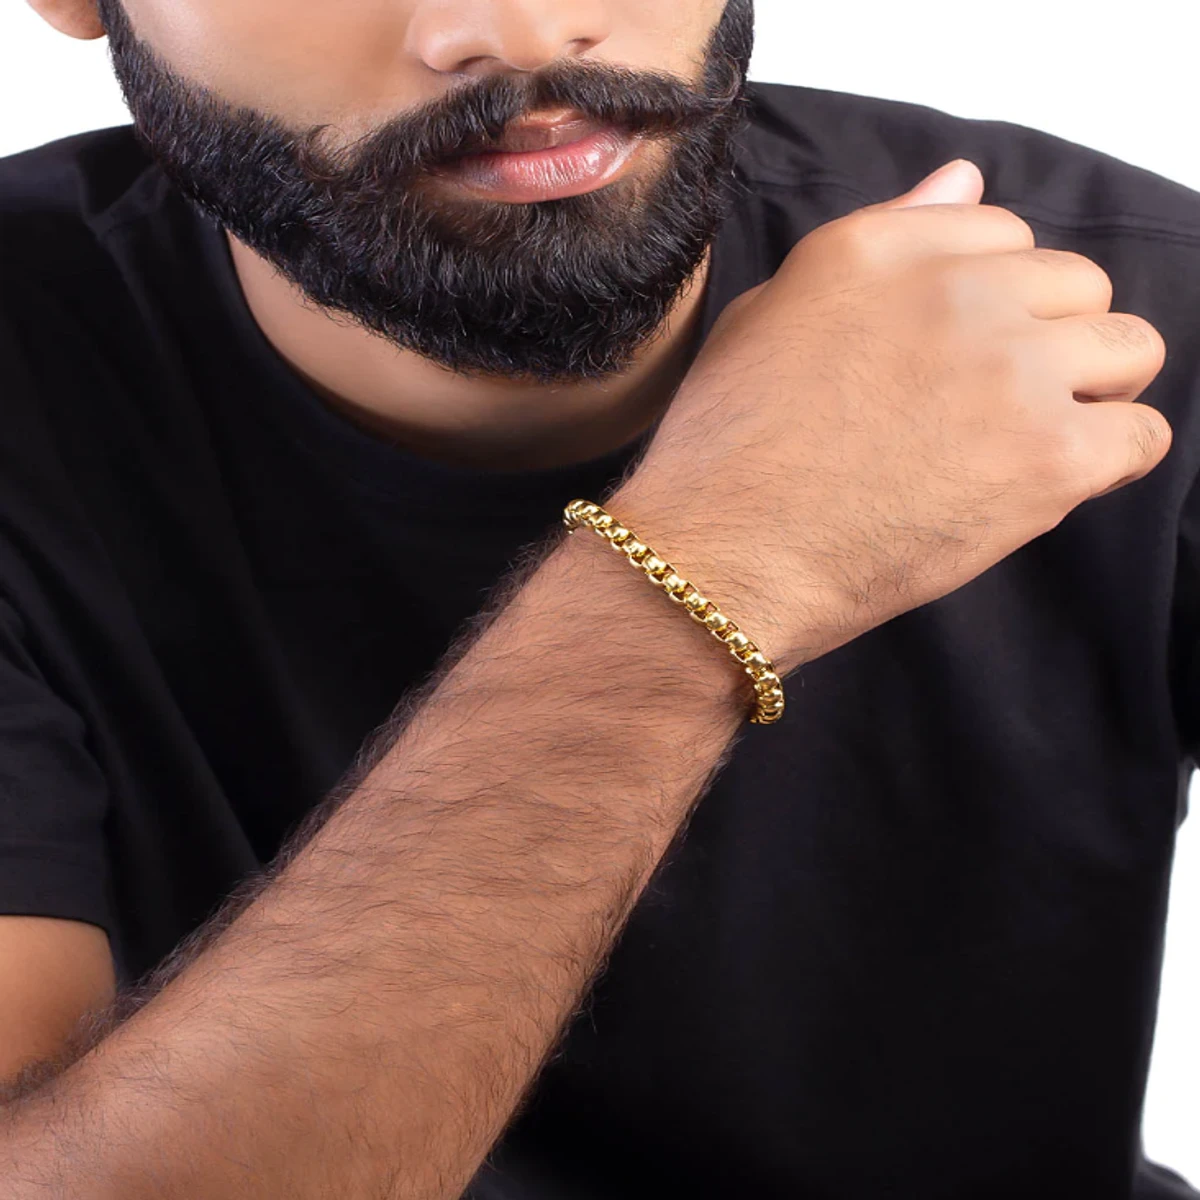 Golden New Stylish Box Chain Bracelet For Men